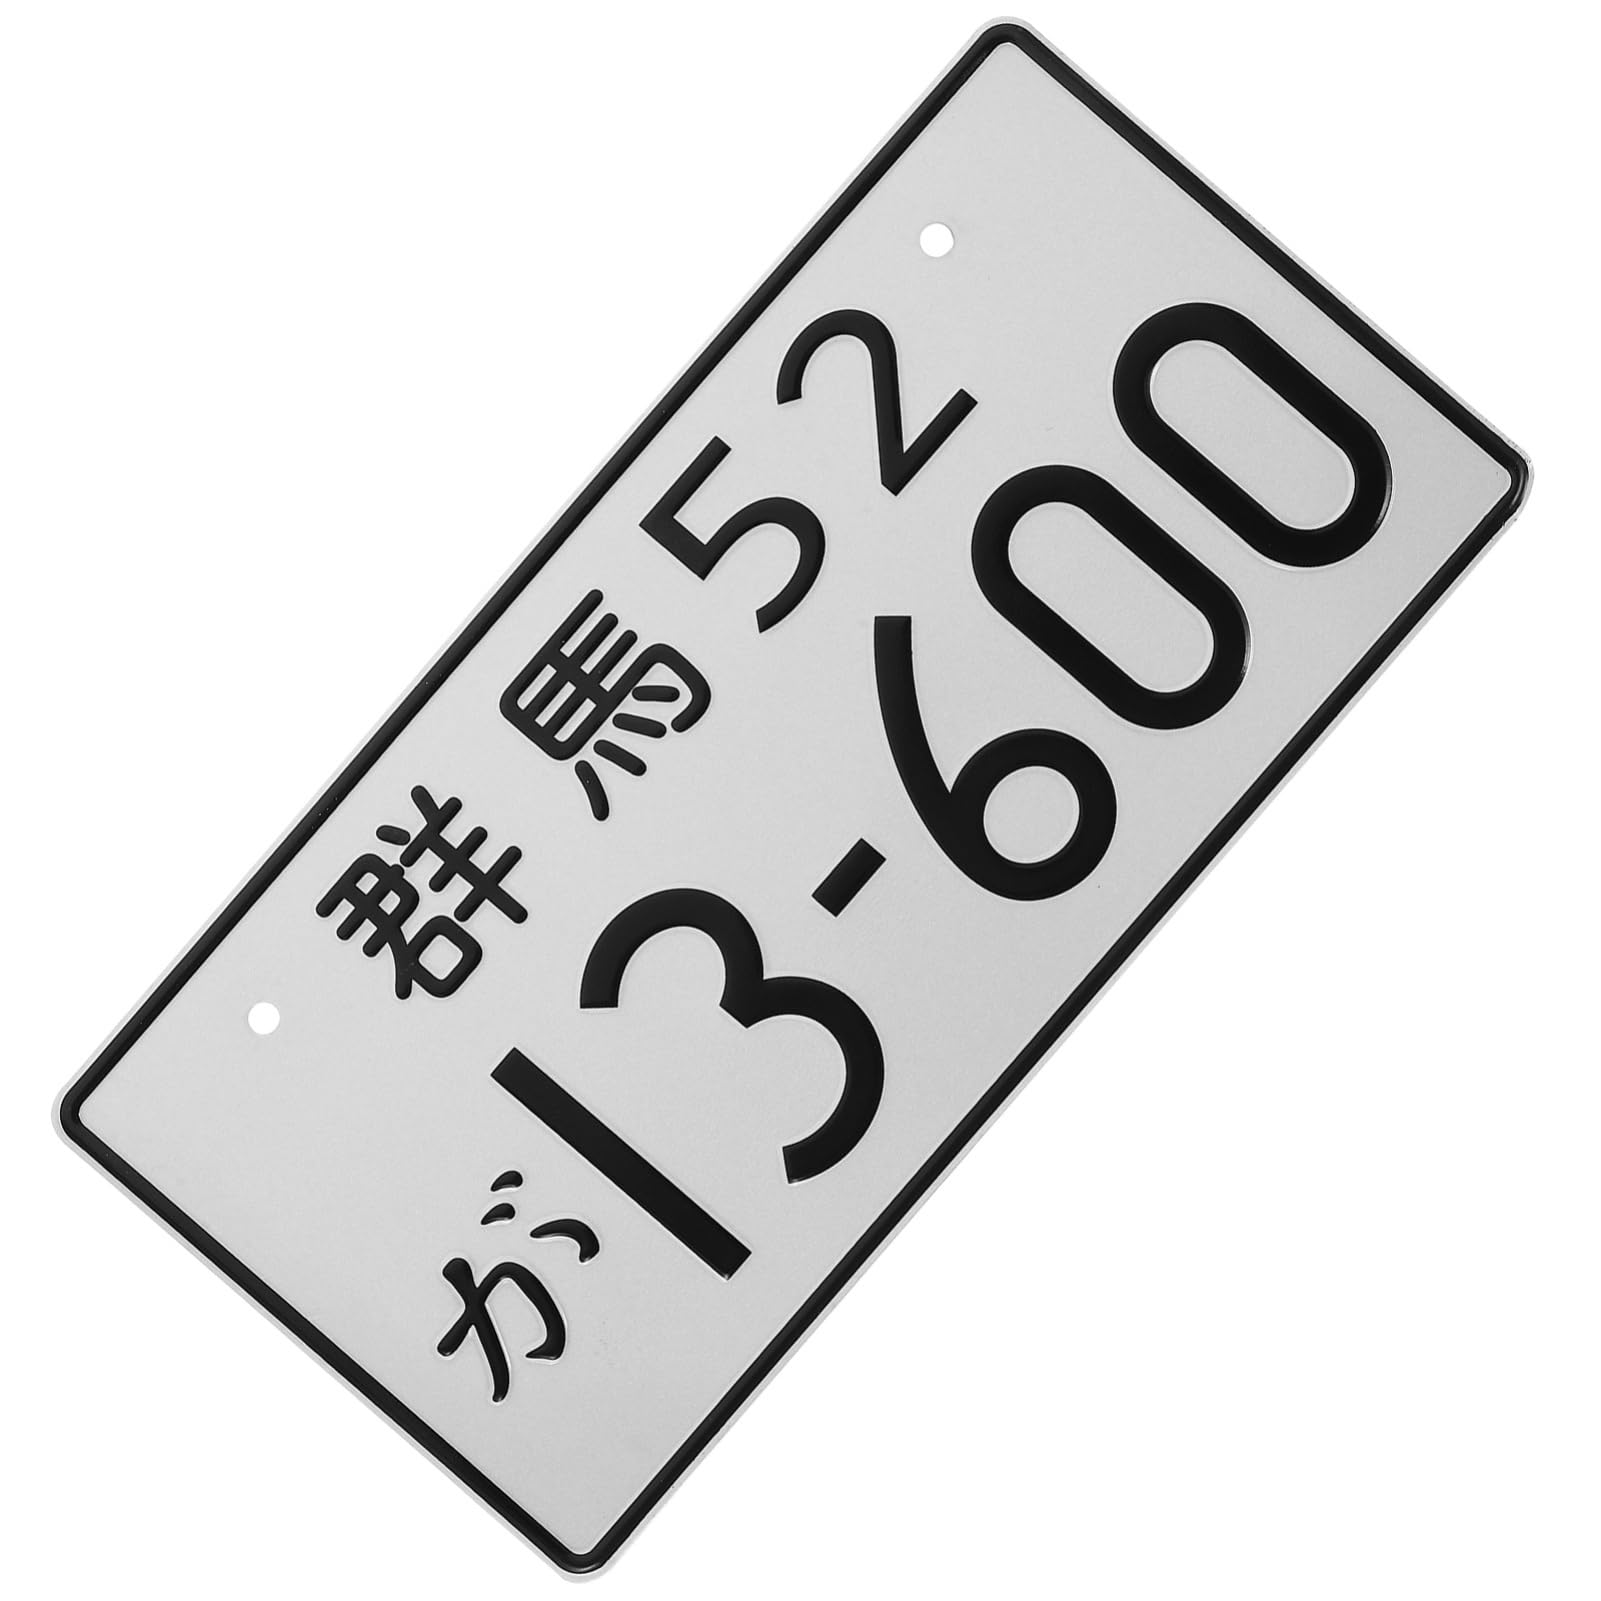 FELTECHELECTR Japanisches Vorderes Nummernschild Nummernschildrahmen Japanisches Nummernschild Metallgeprägtes Nummernschild Japanisches Autokennzeichen Aluminium Einzigartig Dekorative Plakette von FELTECHELECTR